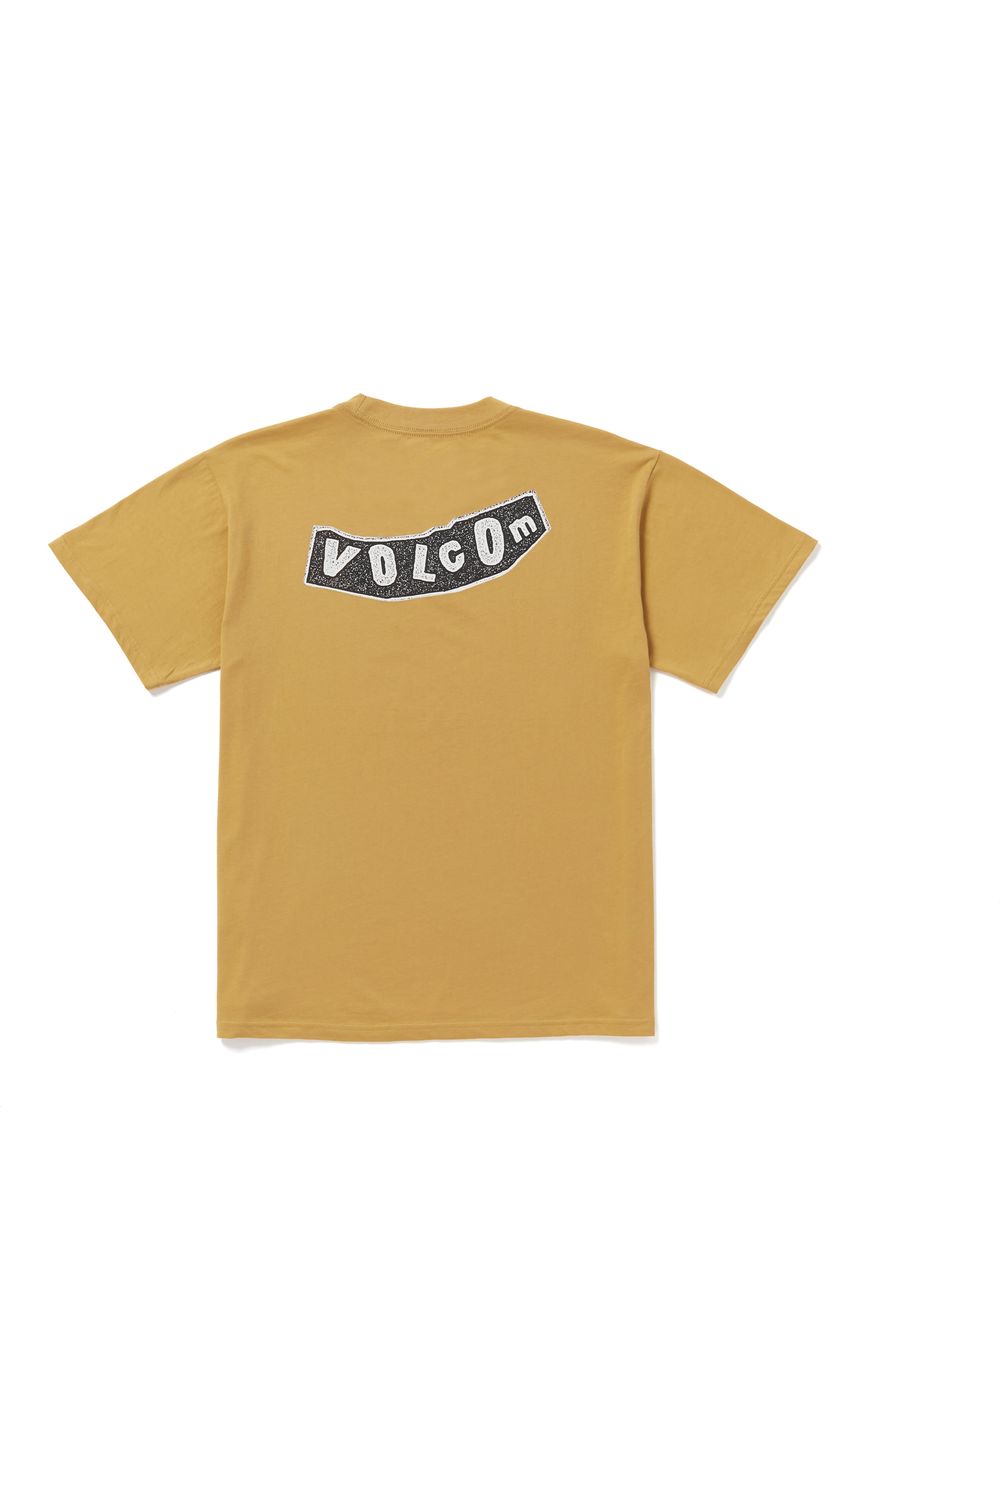 Volcom Skate Vitals Originator Short Sleeve T-Shirt Mustard